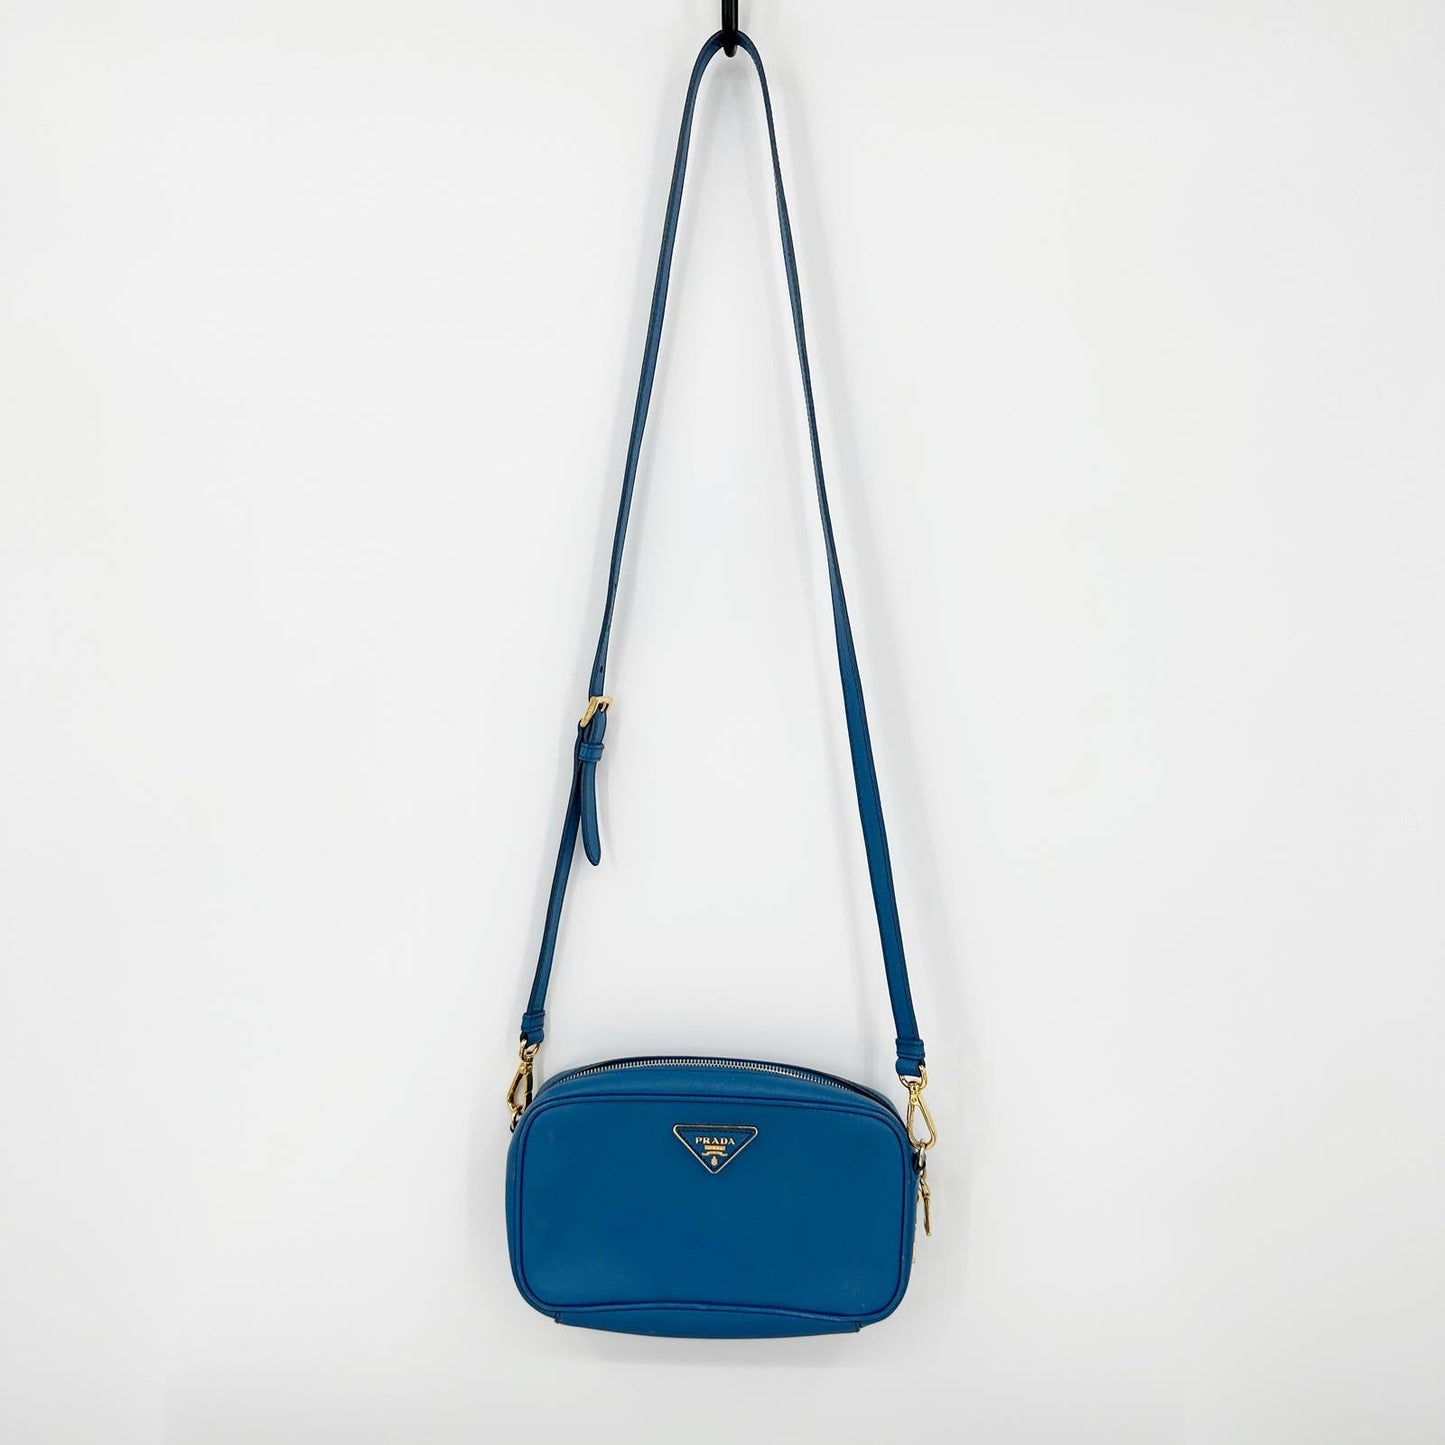 Prada Saffiano Pebbled Leather Small Camera Bag Crossbody Purse Blue